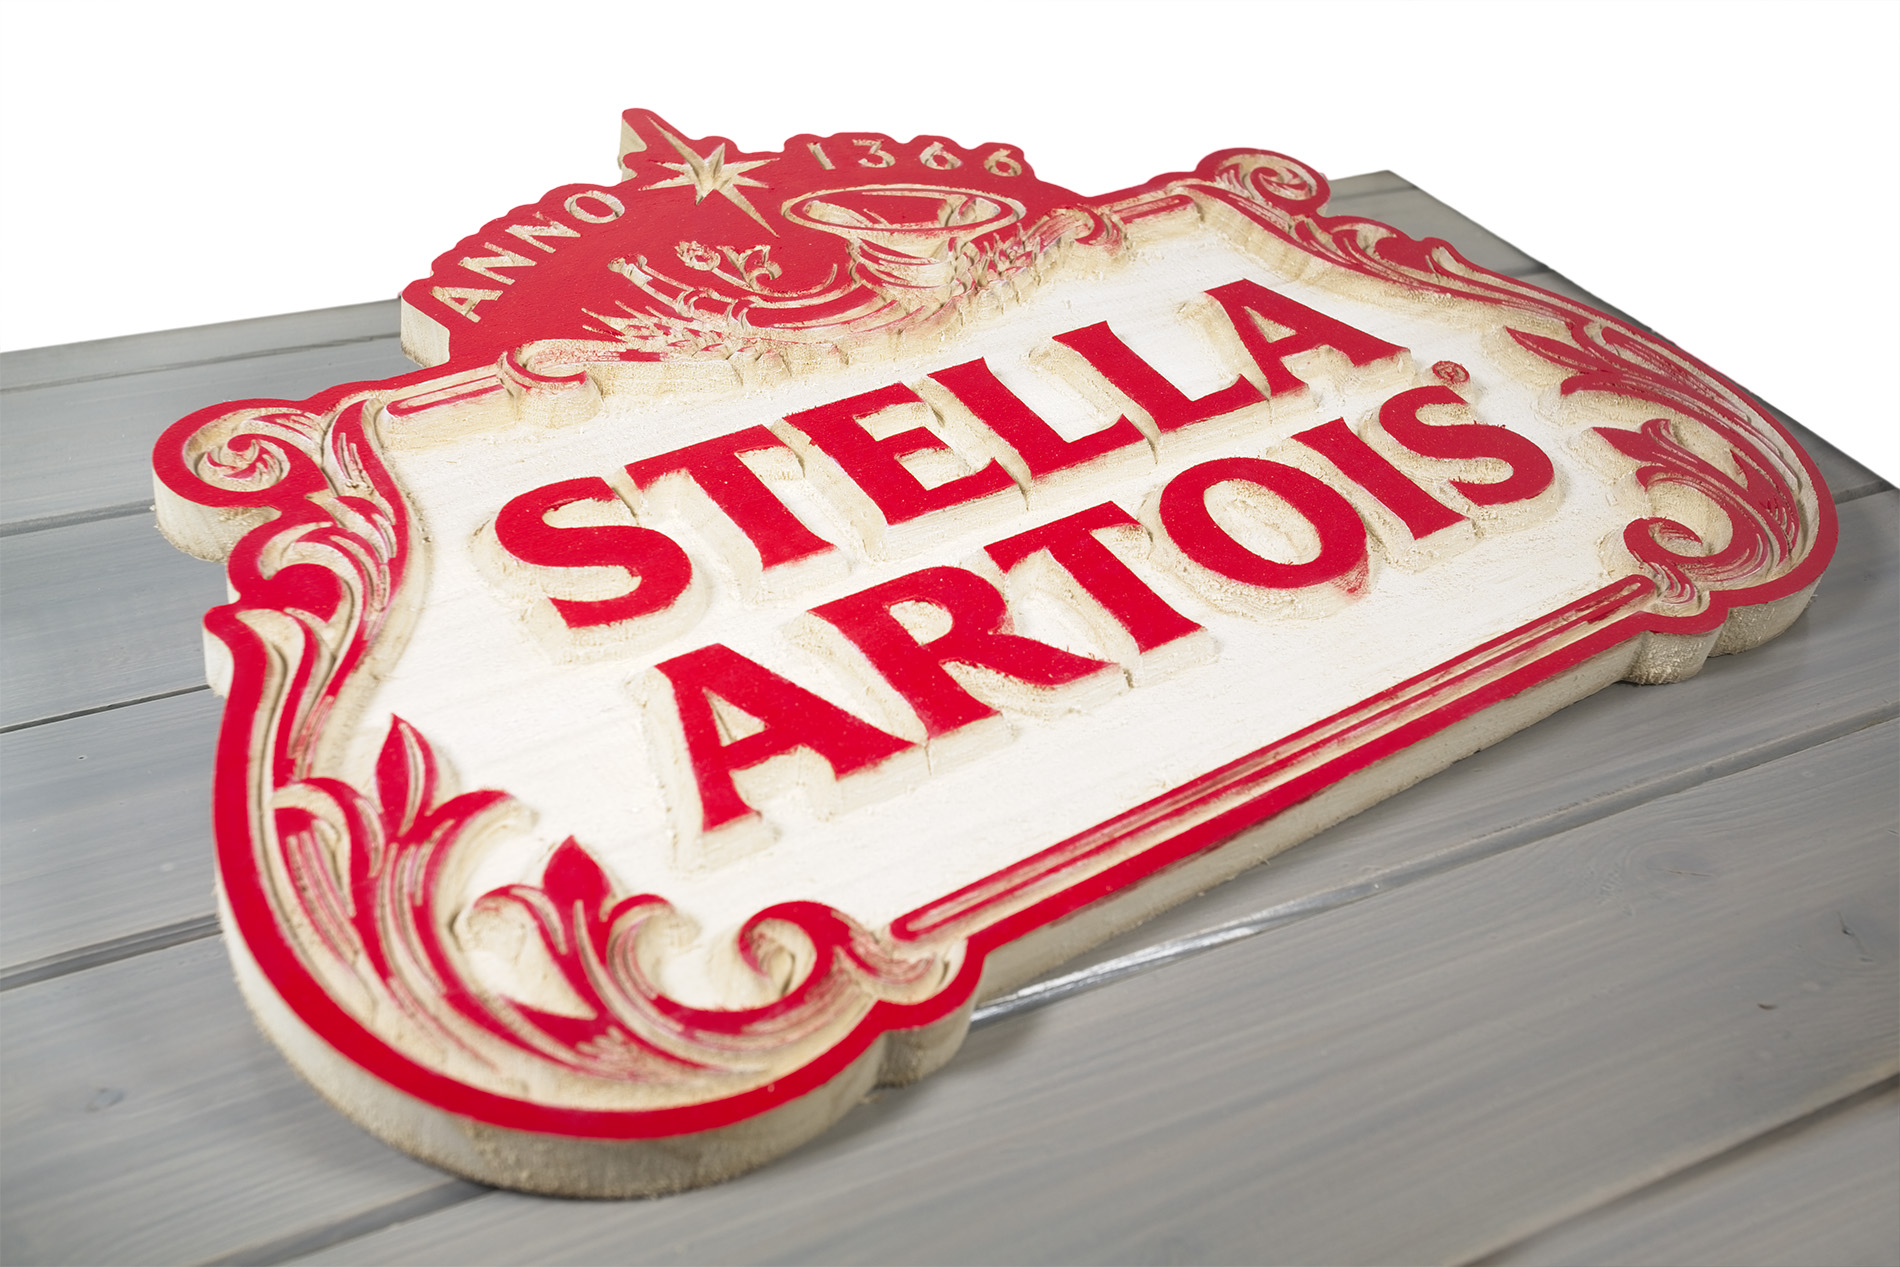 Insegna Stella Artois di legno